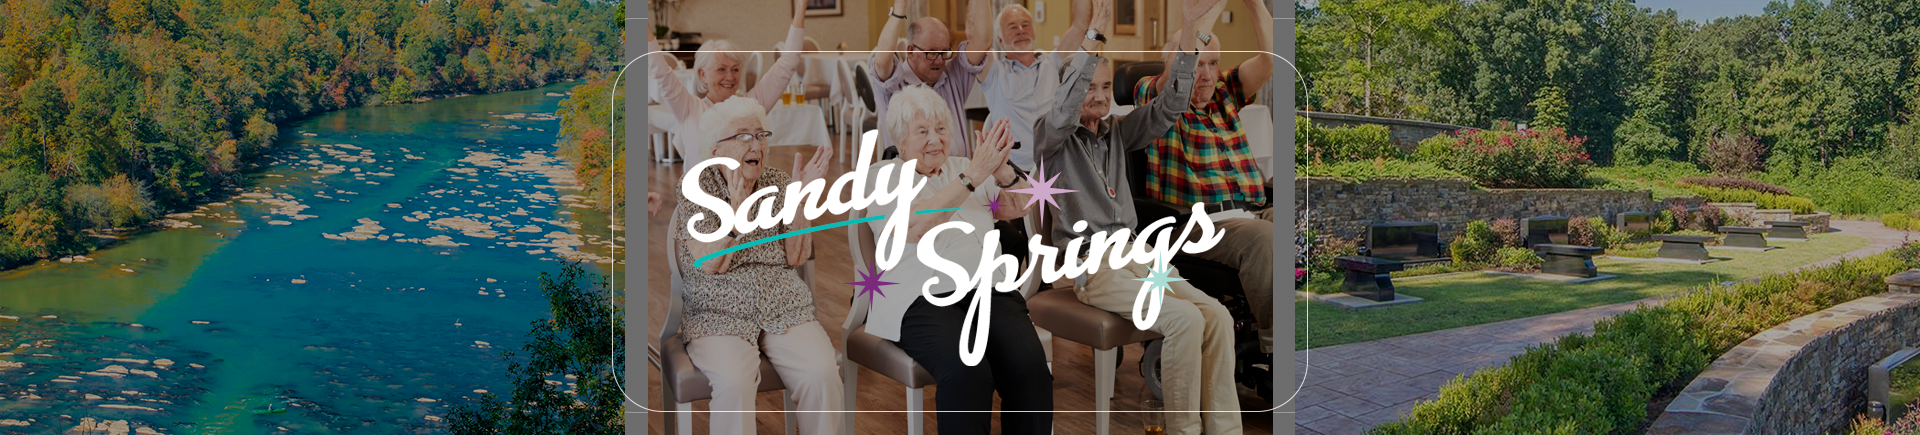 Assisted Living Alternatives for Seniors in Sandy Springs, GA